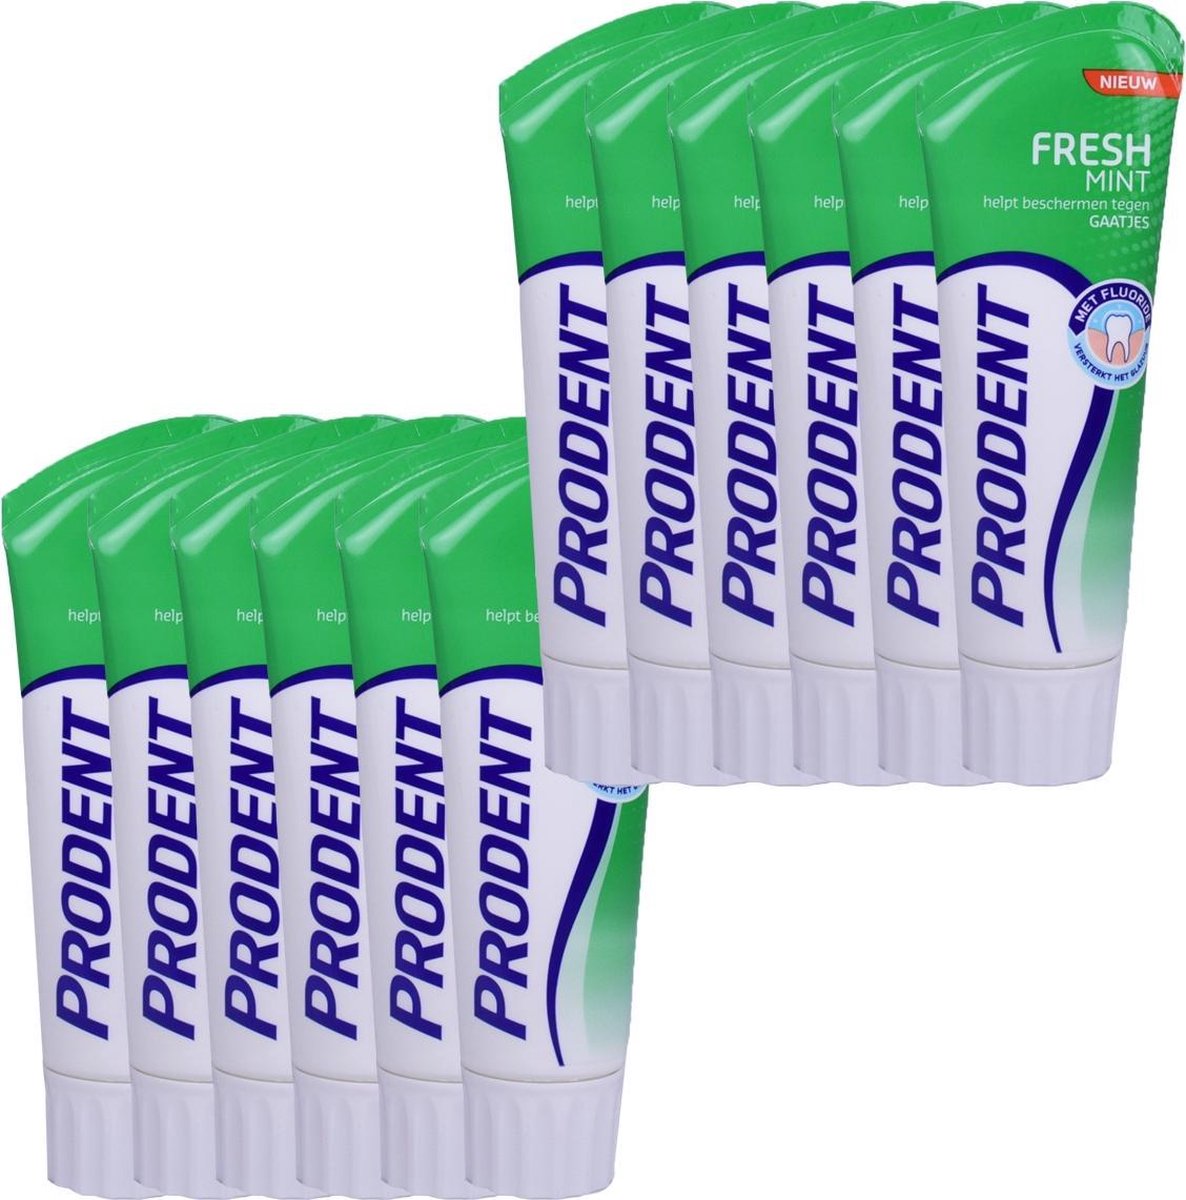 Prodent tandpasta  Fresh Mint Beschermt tegen gaatjes VOORDEELVERPAKKING 12x 75ml. - Prodent